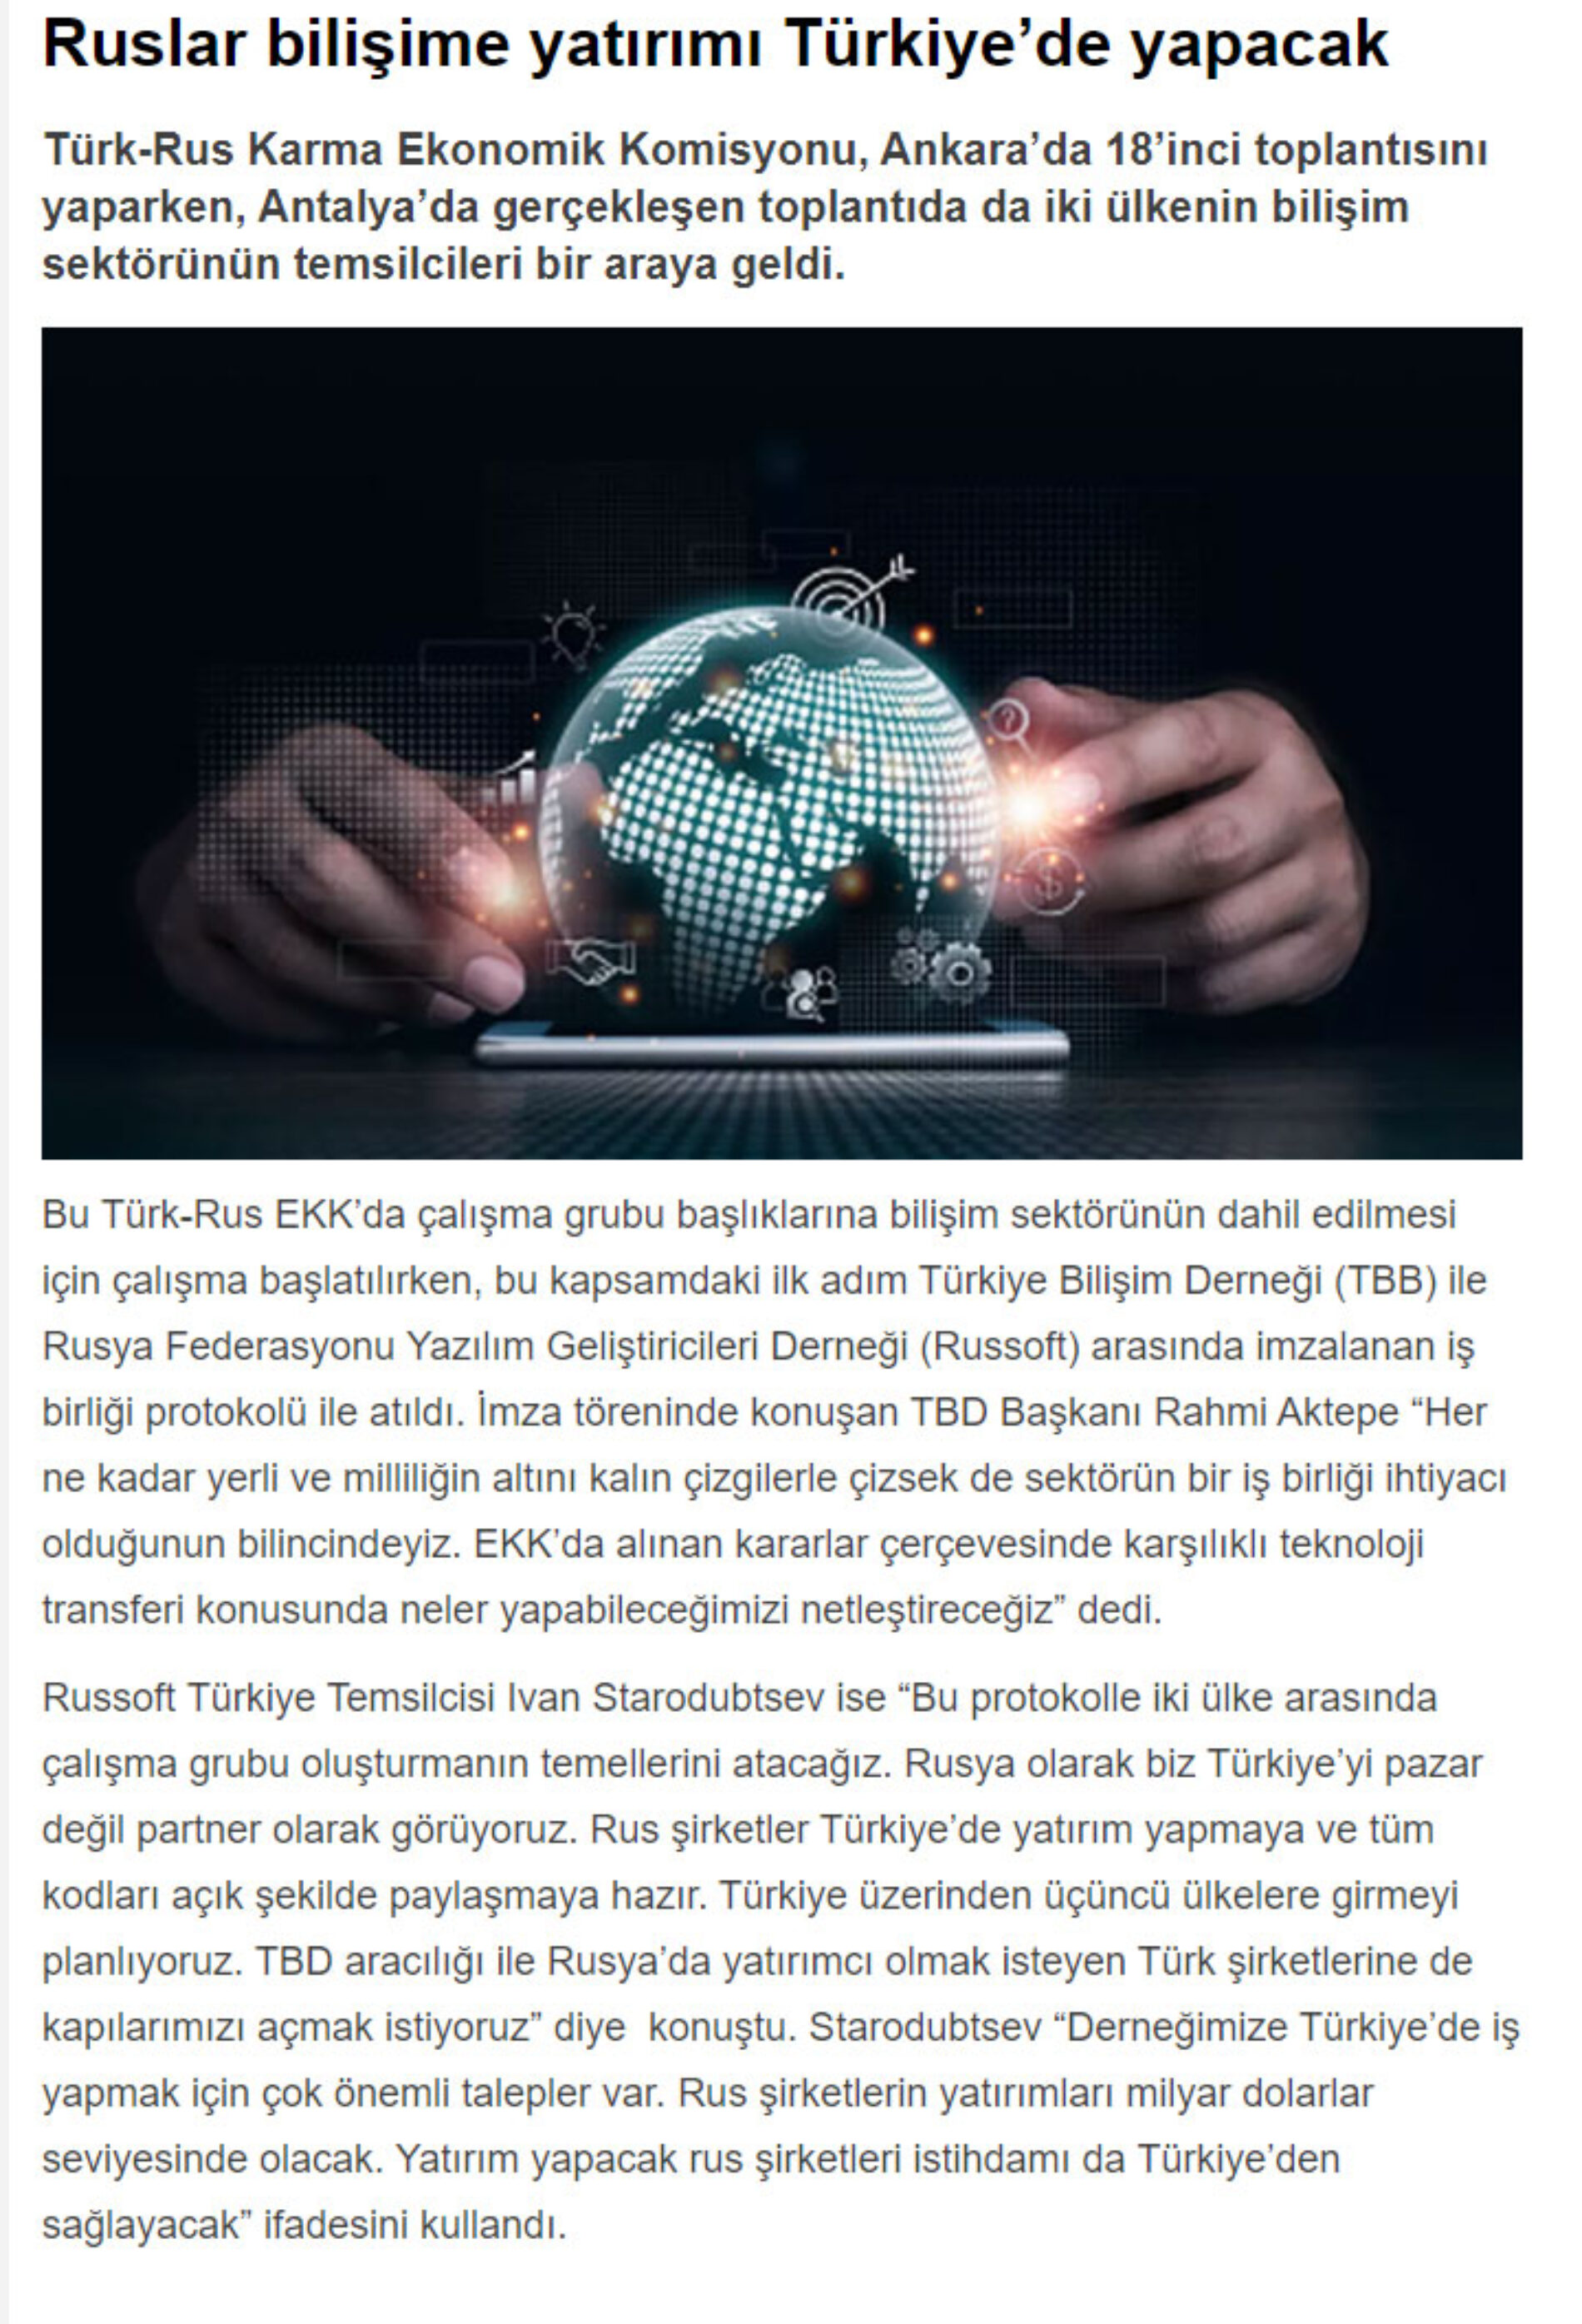 Ruslar Bilişime Yatırımı Türkiye’de Yapacak – TÜRKİYE GAZETESİ